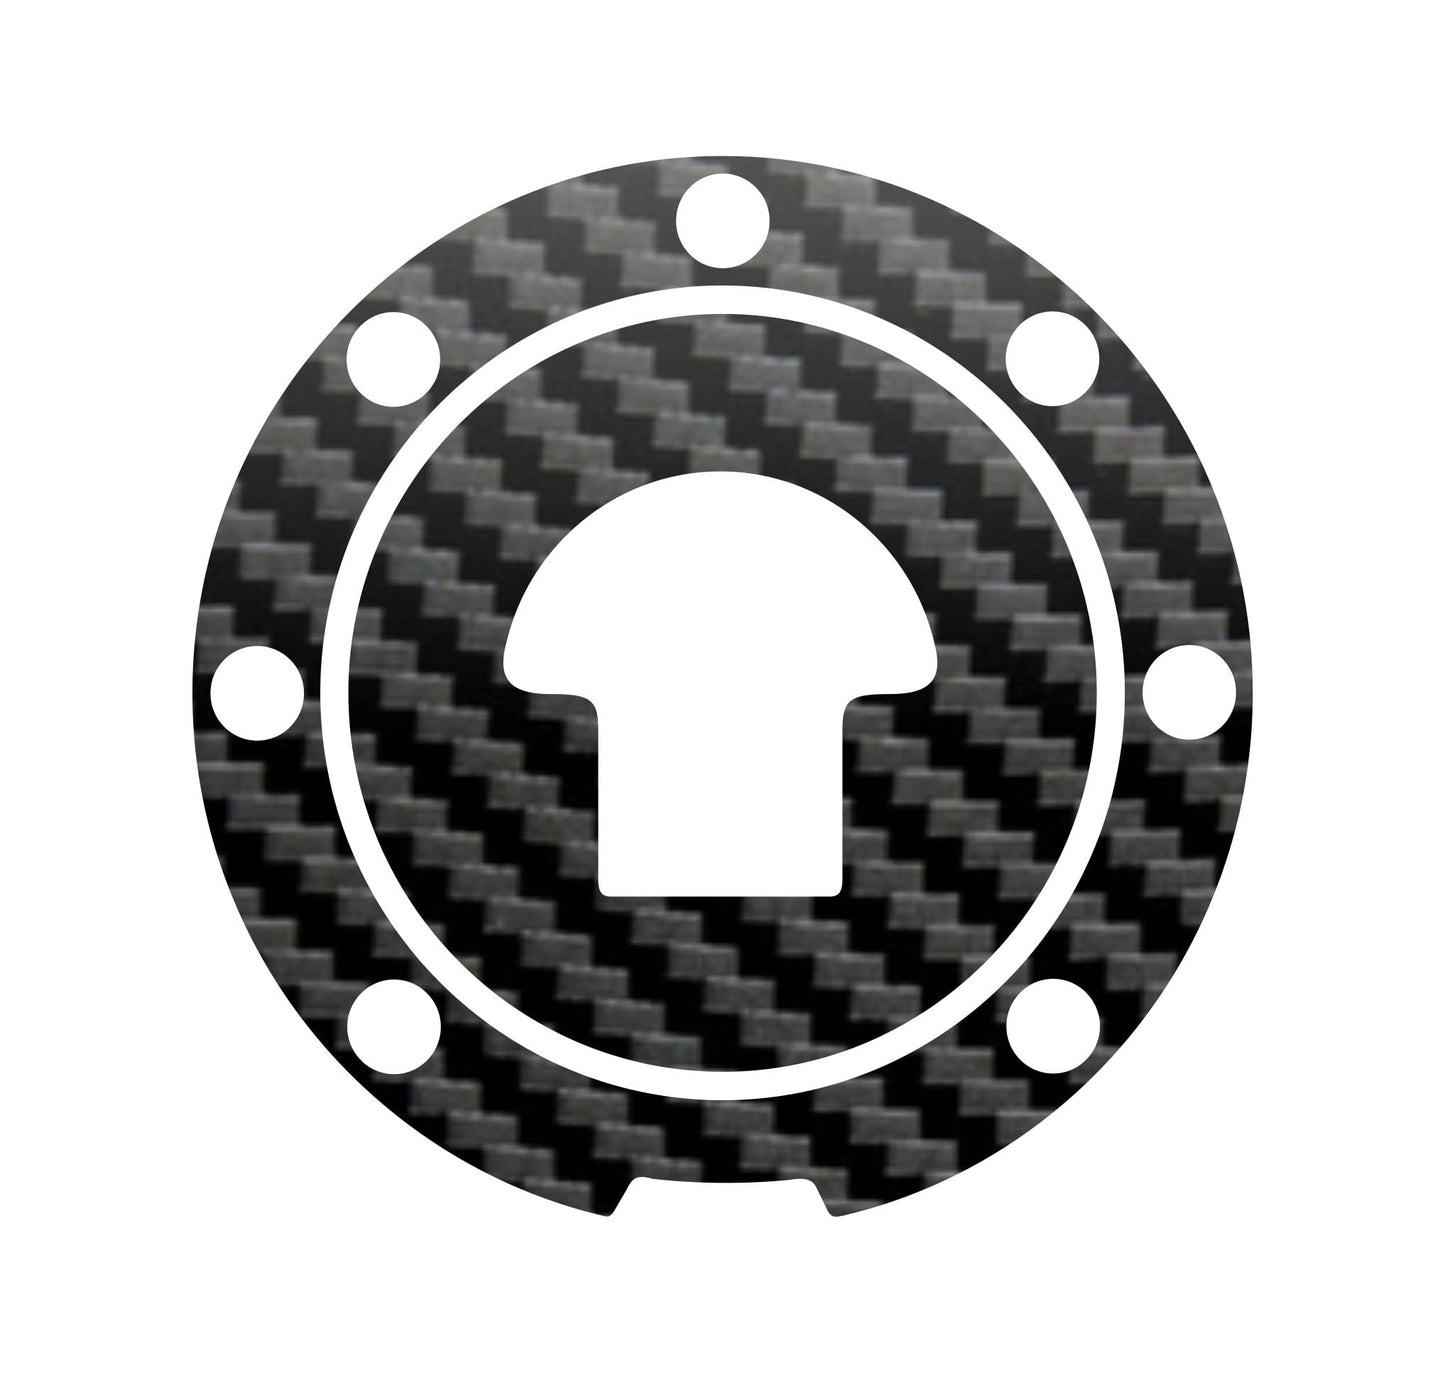 DualColorStampe Adesivo protezione tappo serbatoio compatibile con HONDA CBR 1000RR (2004-2012) carbonio moto M0189 a €9.99 solo da DualColorStampe